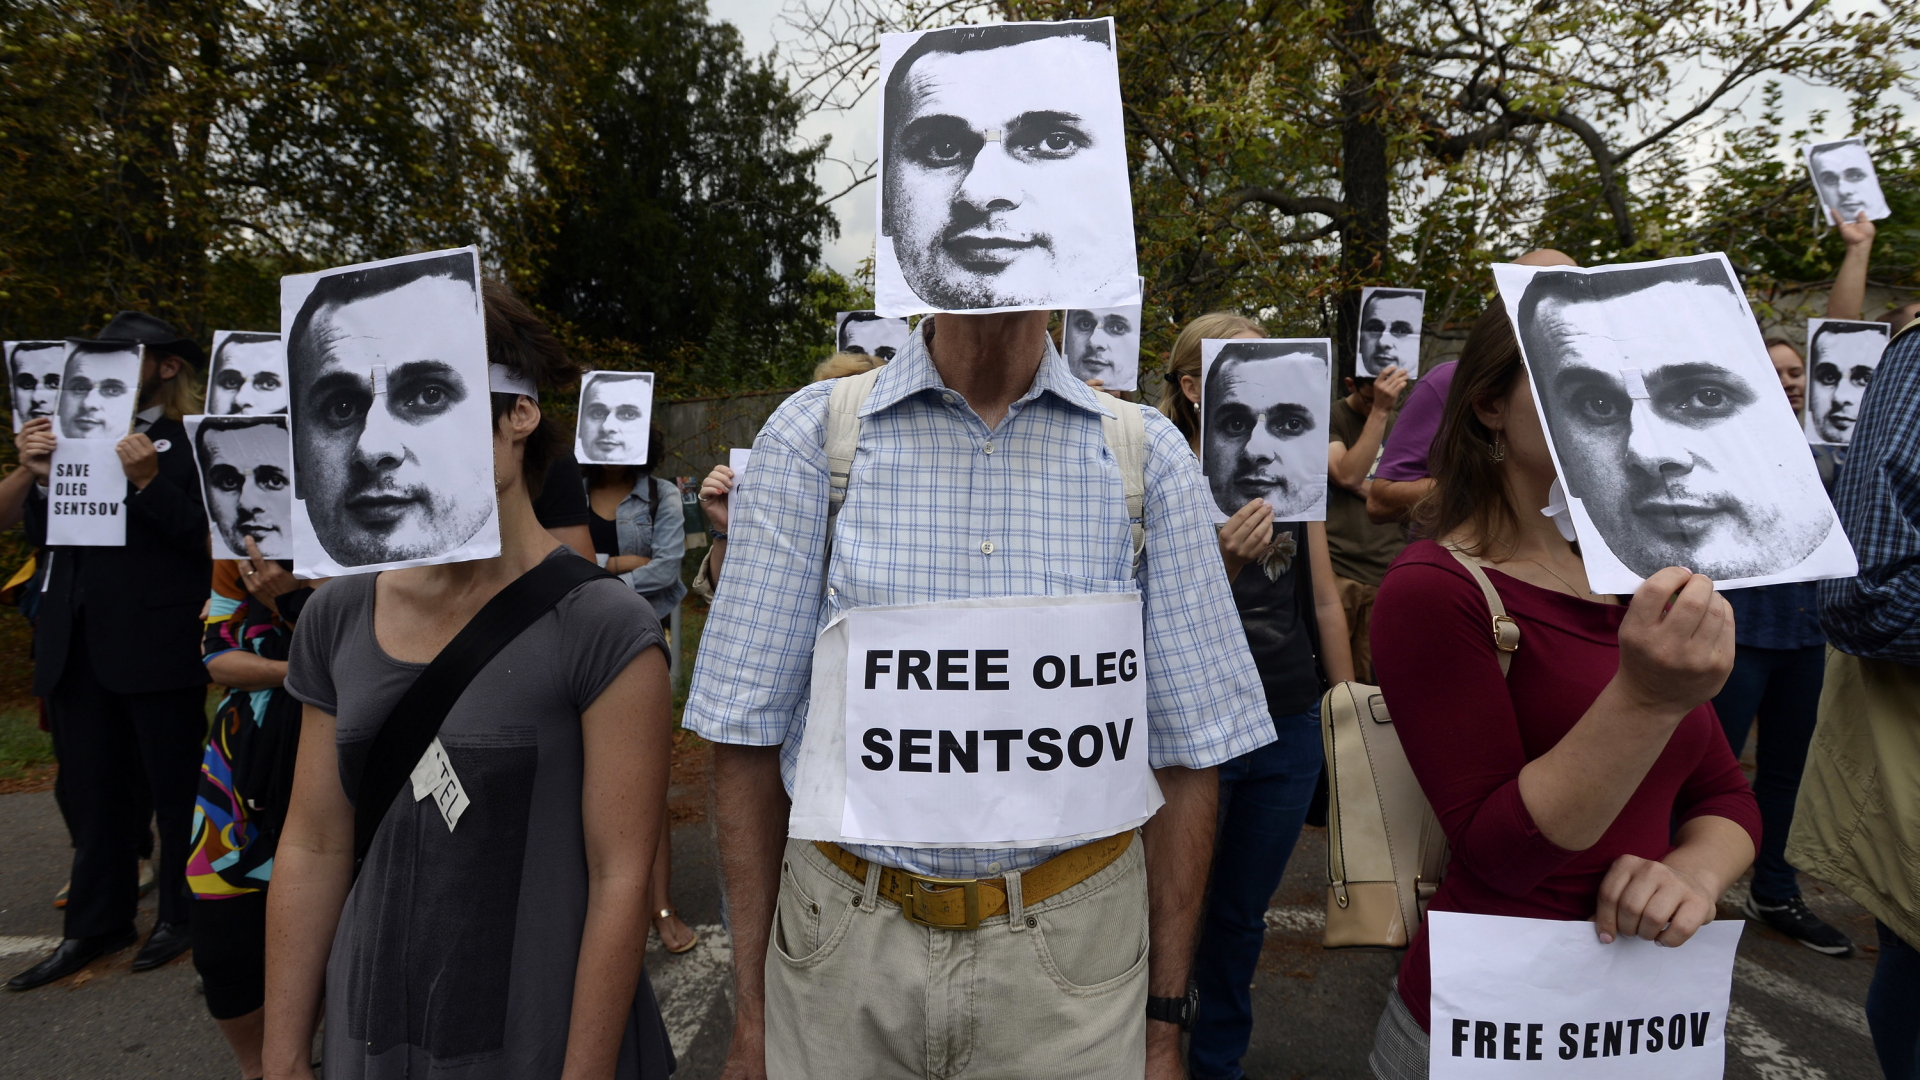 Protest für Sensow: Demonstranten tragen Masken des ukrainischen Regisseurs und fordern dessen Freilassung. | Bildquelle: dpa